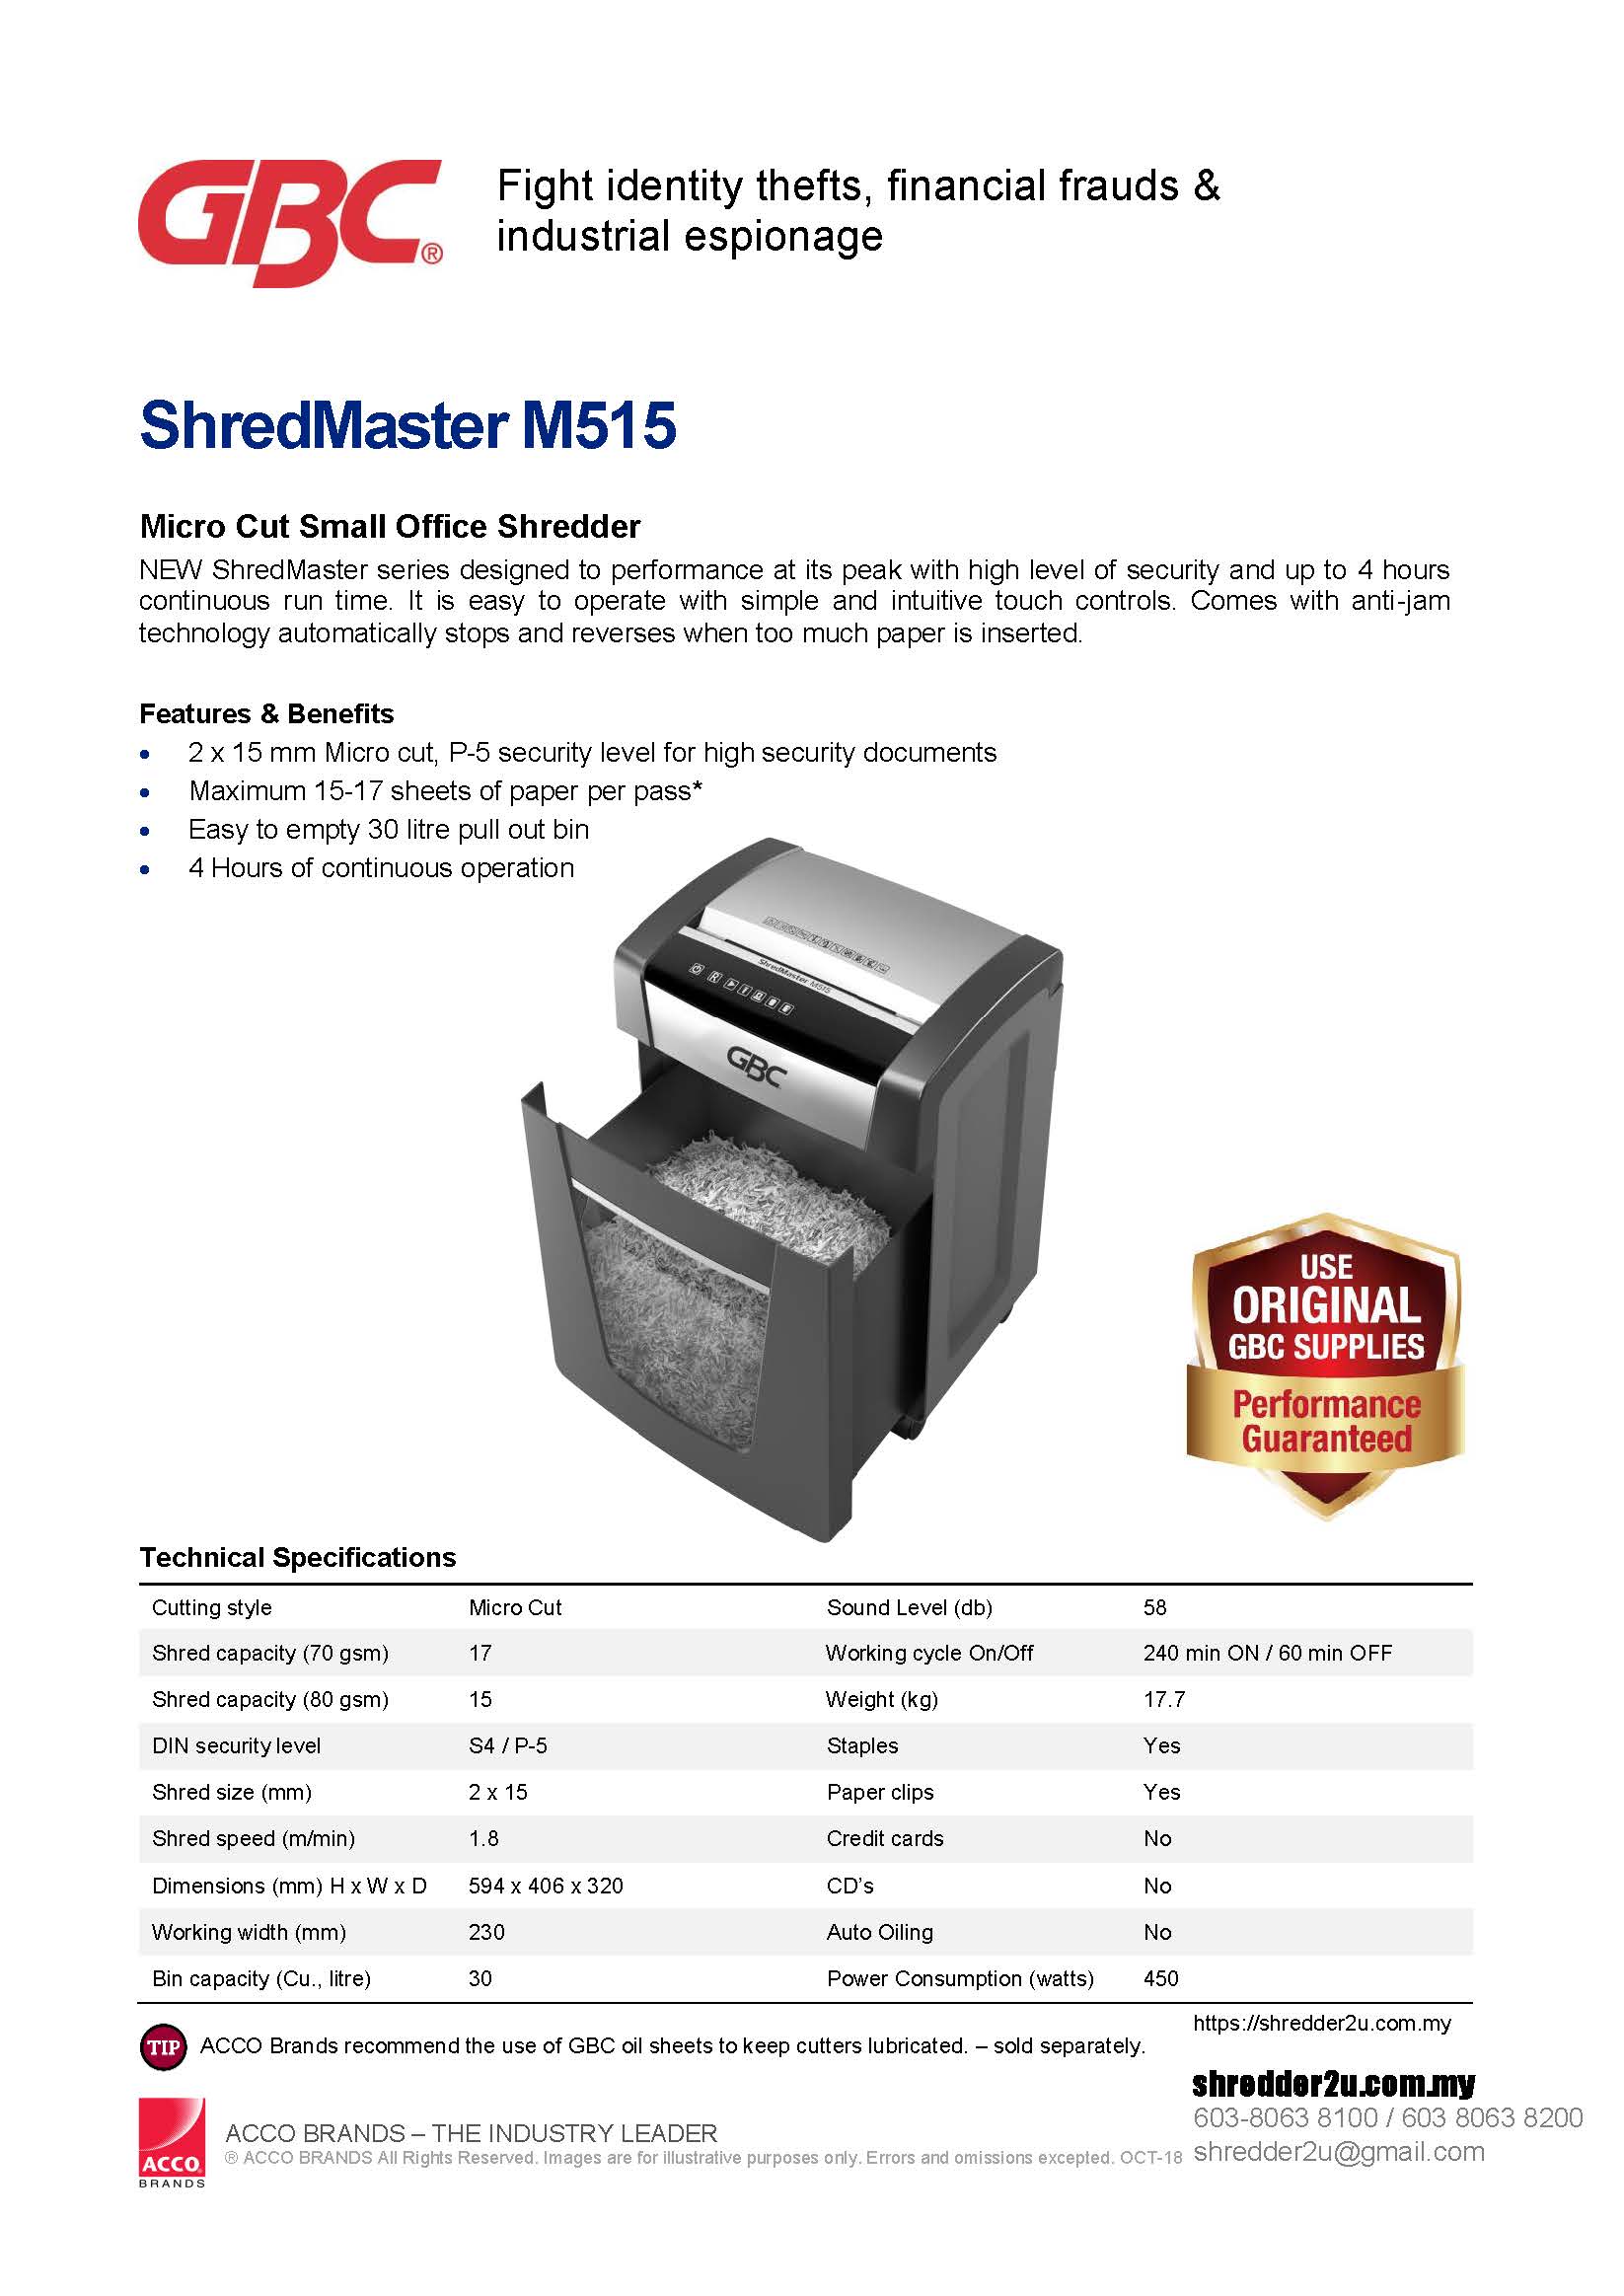 GBC ShredMaster M515 Specification